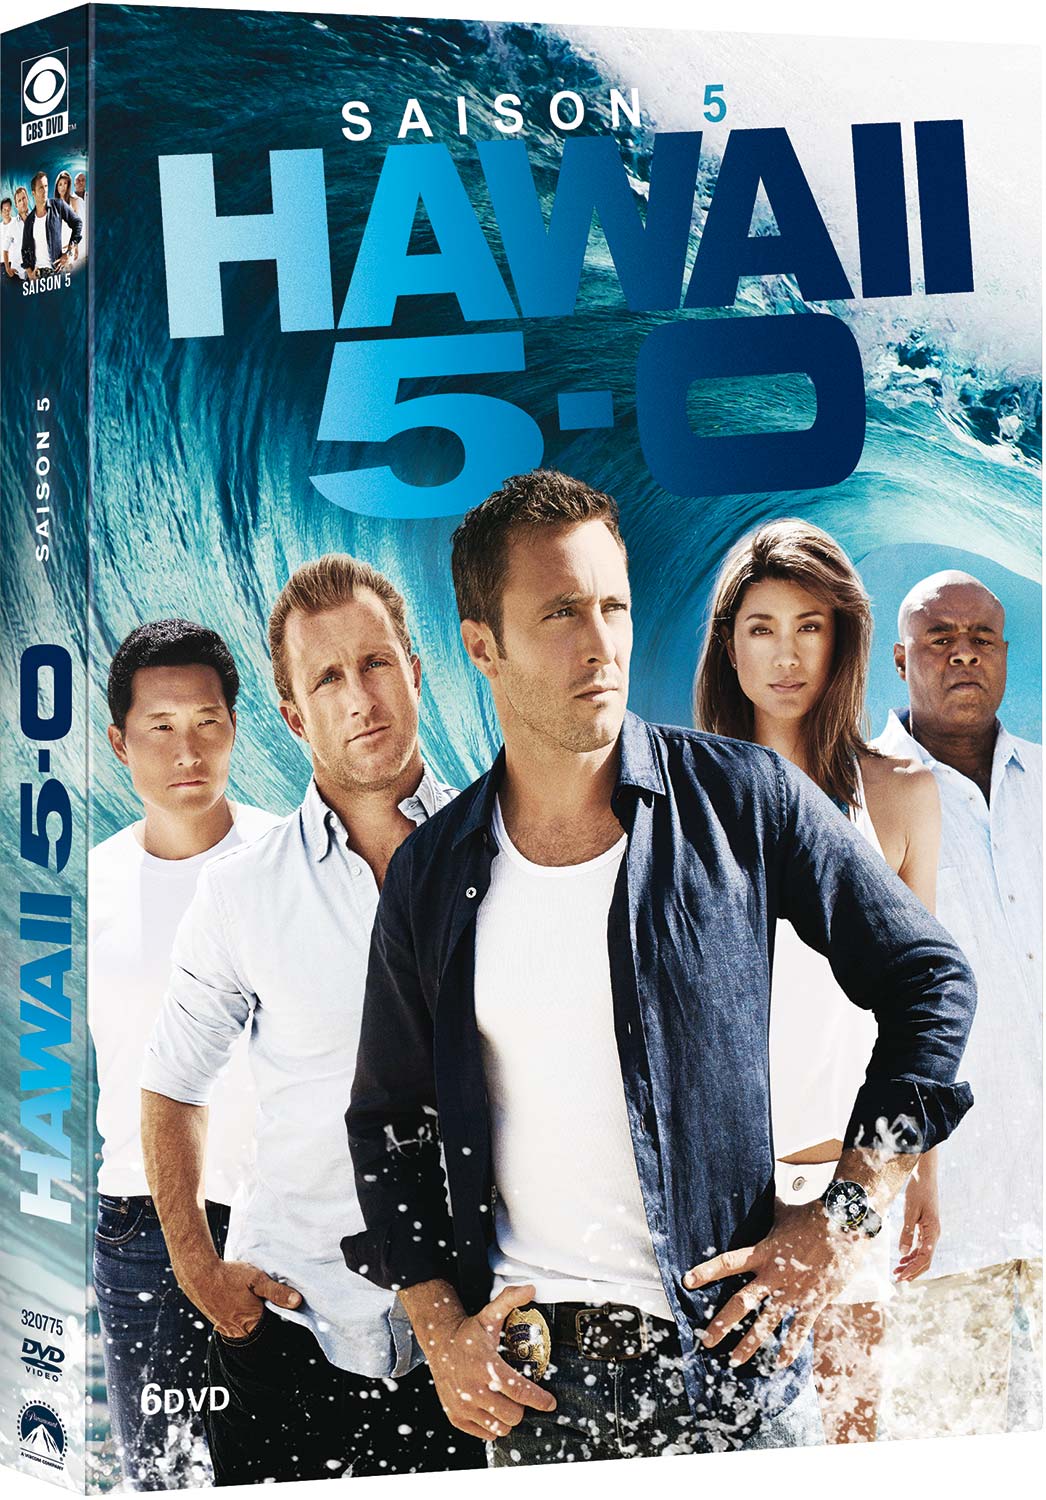 HAWAII 5-0 S05